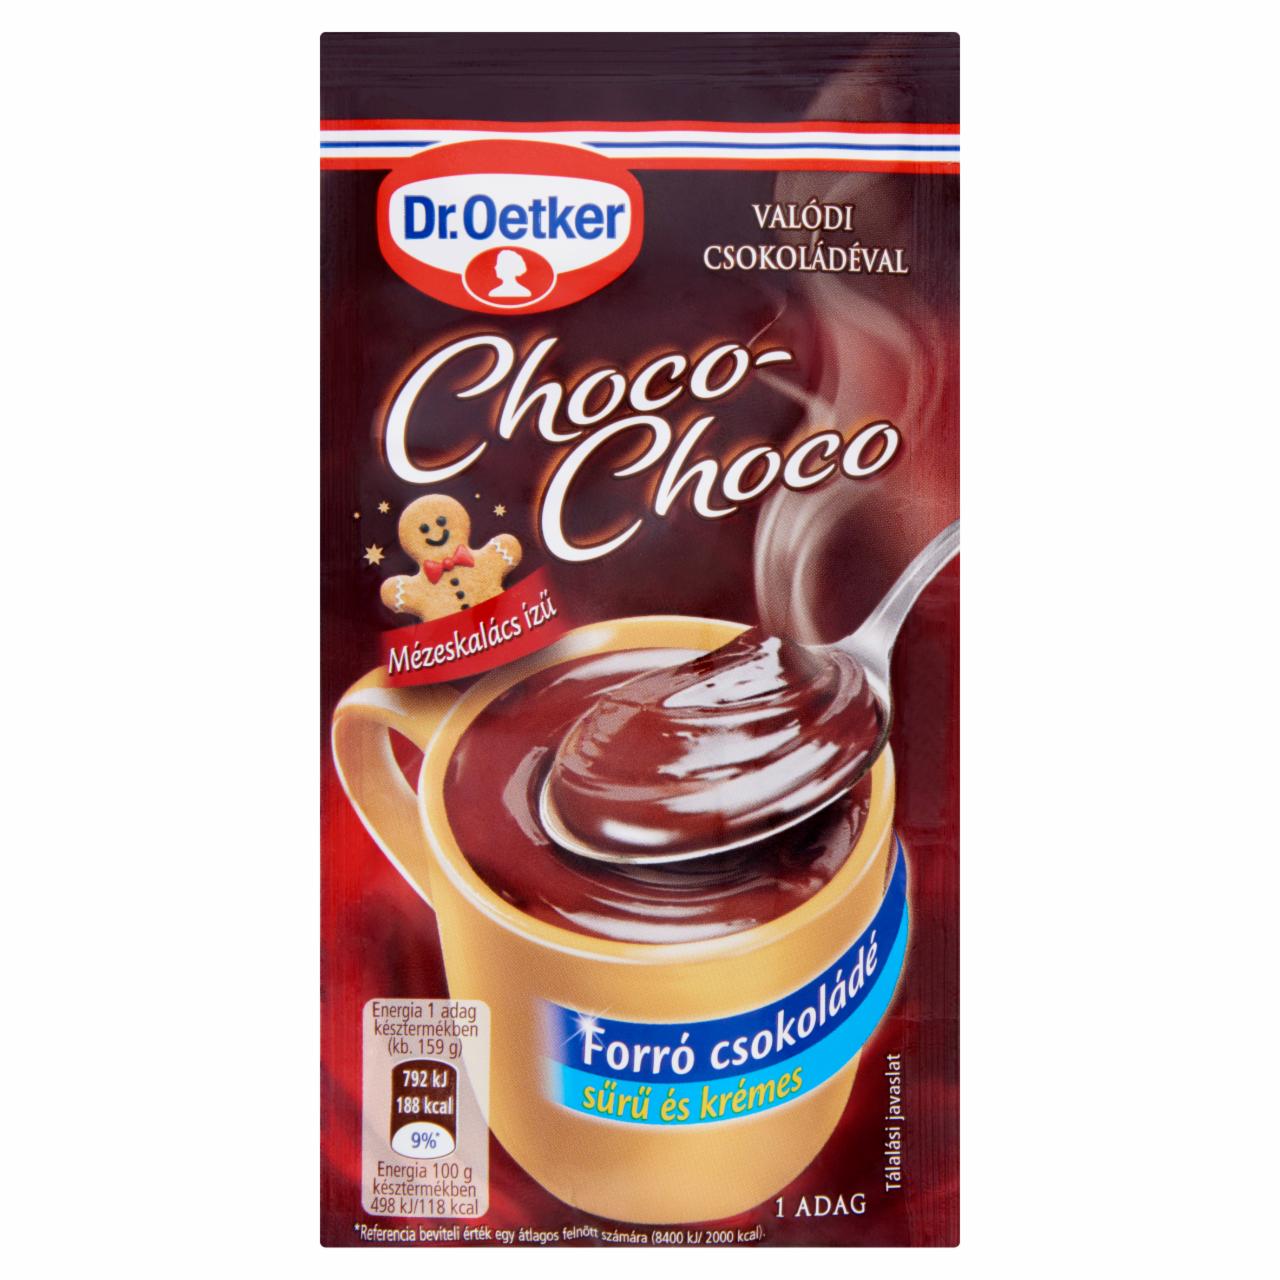 Képek - Dr. Oetker Choco-Choco mézeskalács ízű forró csokoládé italpor 34 g